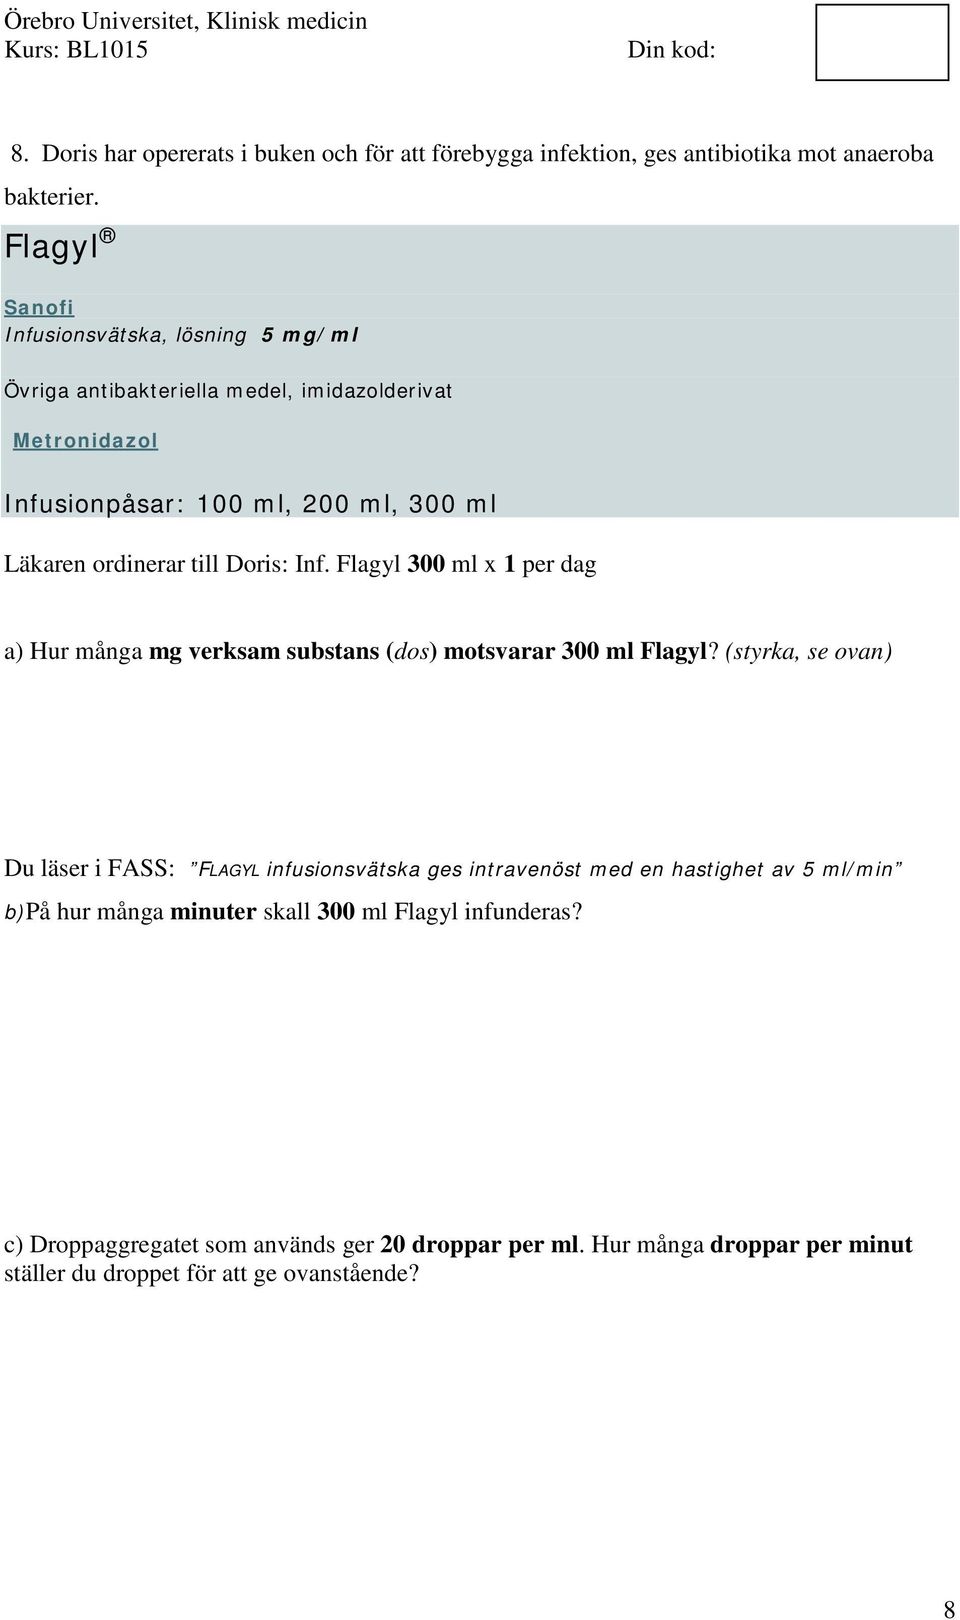 till Doris: Inf. Flagyl 300 ml x 1 per dag a) Hur många mg verksam substans (dos) motsvarar 300 ml Flagyl?